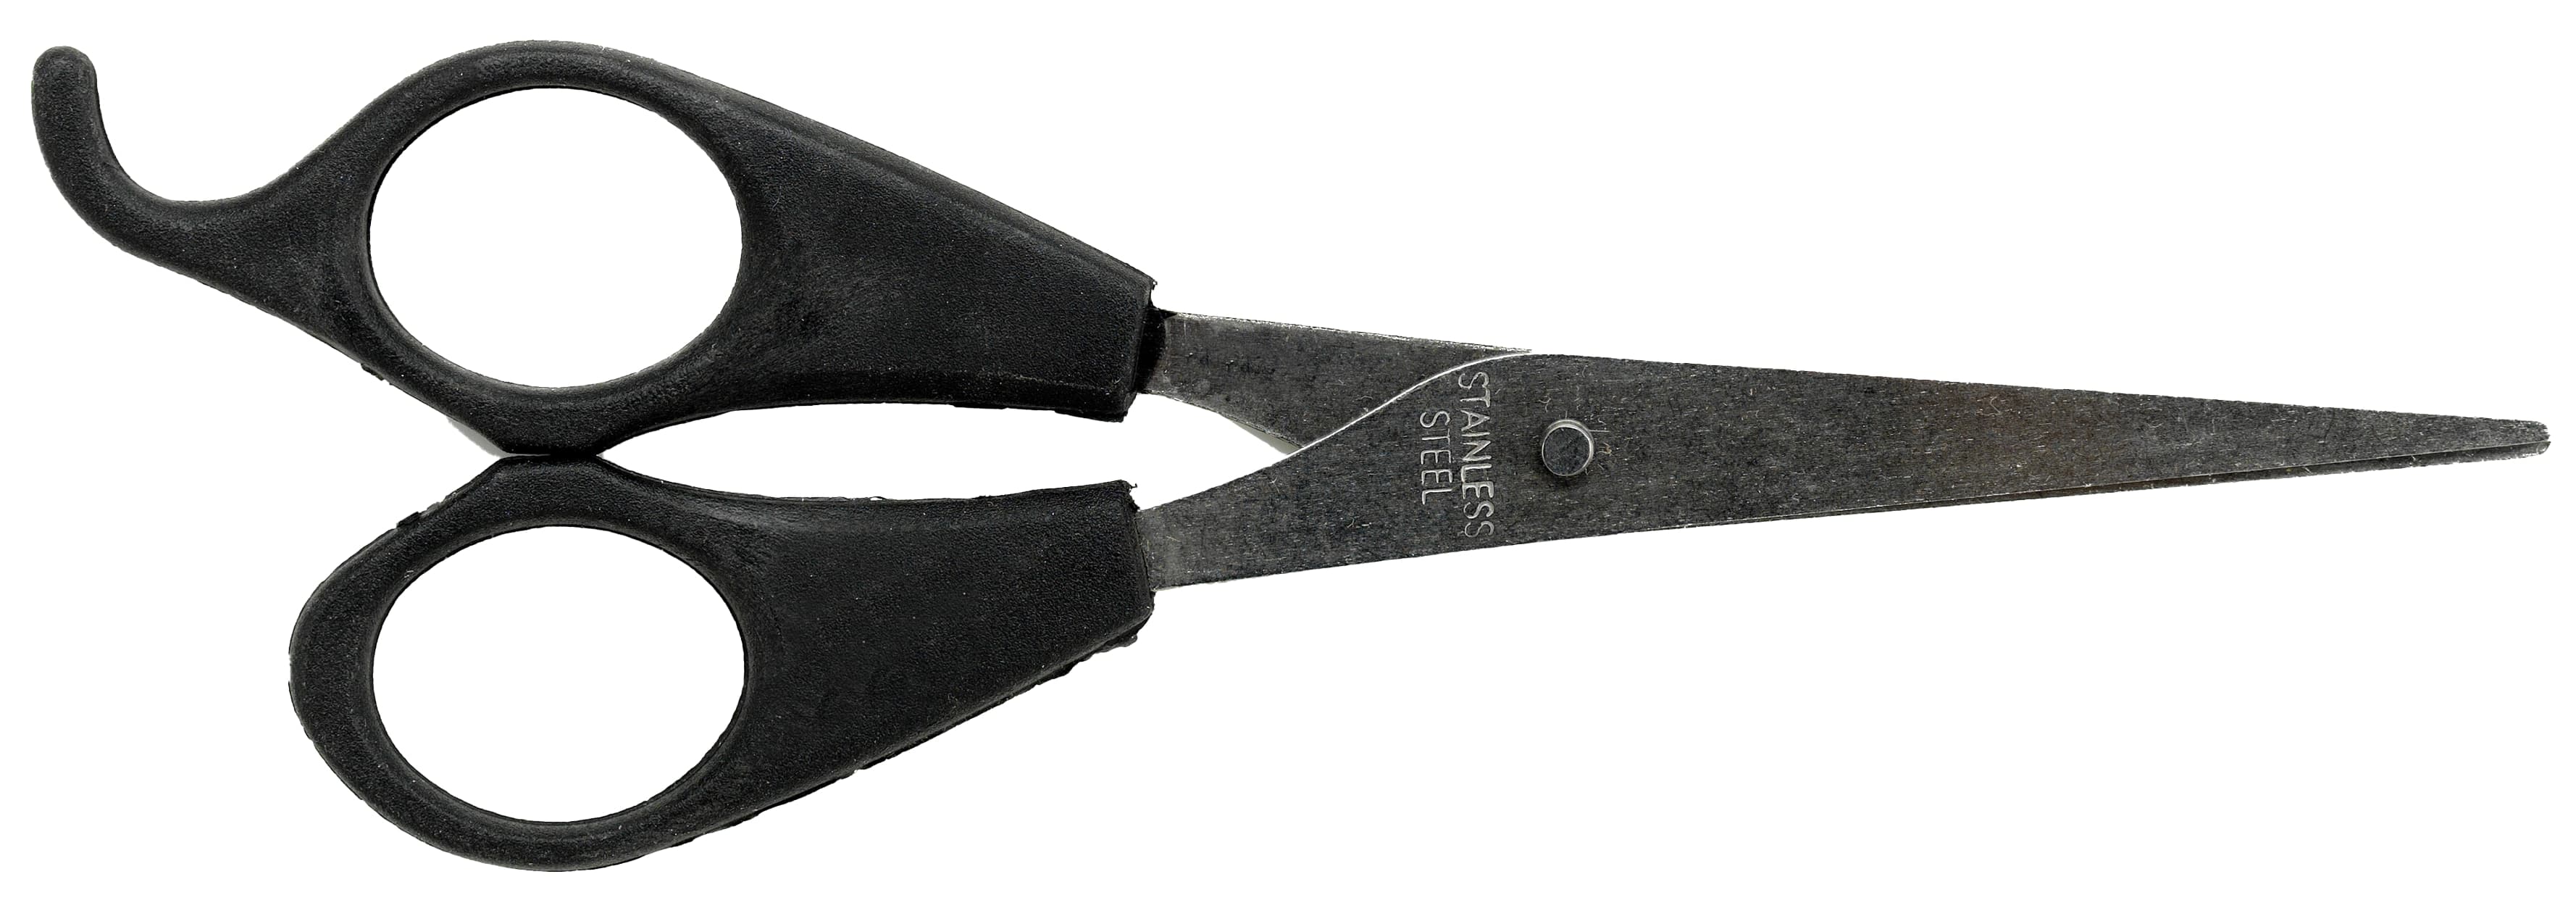 MELISSA Haarschneider 16670085, 15 W, schwarz/silber